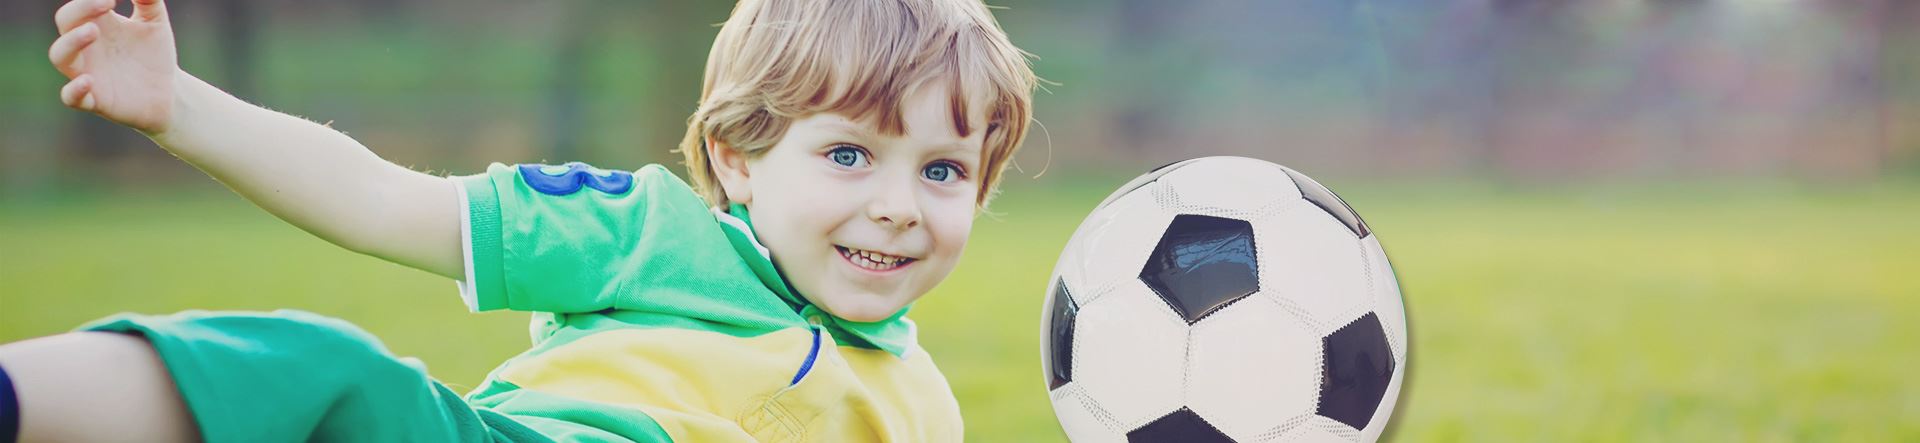 Motivos para apoiar sua filha a jogar futebol